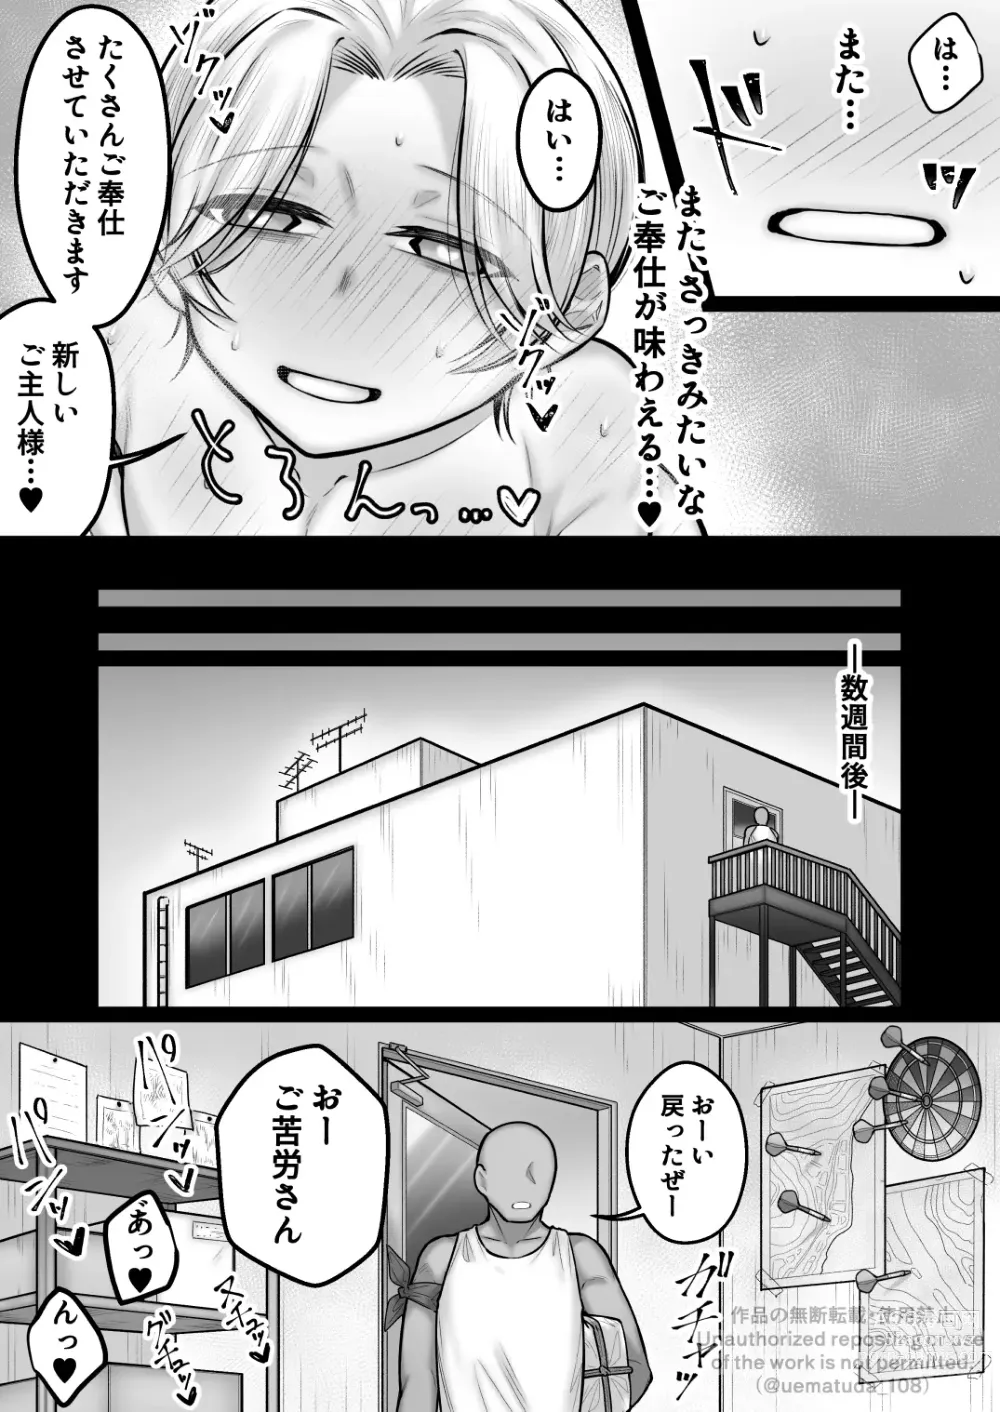 Page 19 of doujinshi Yoso no Ko